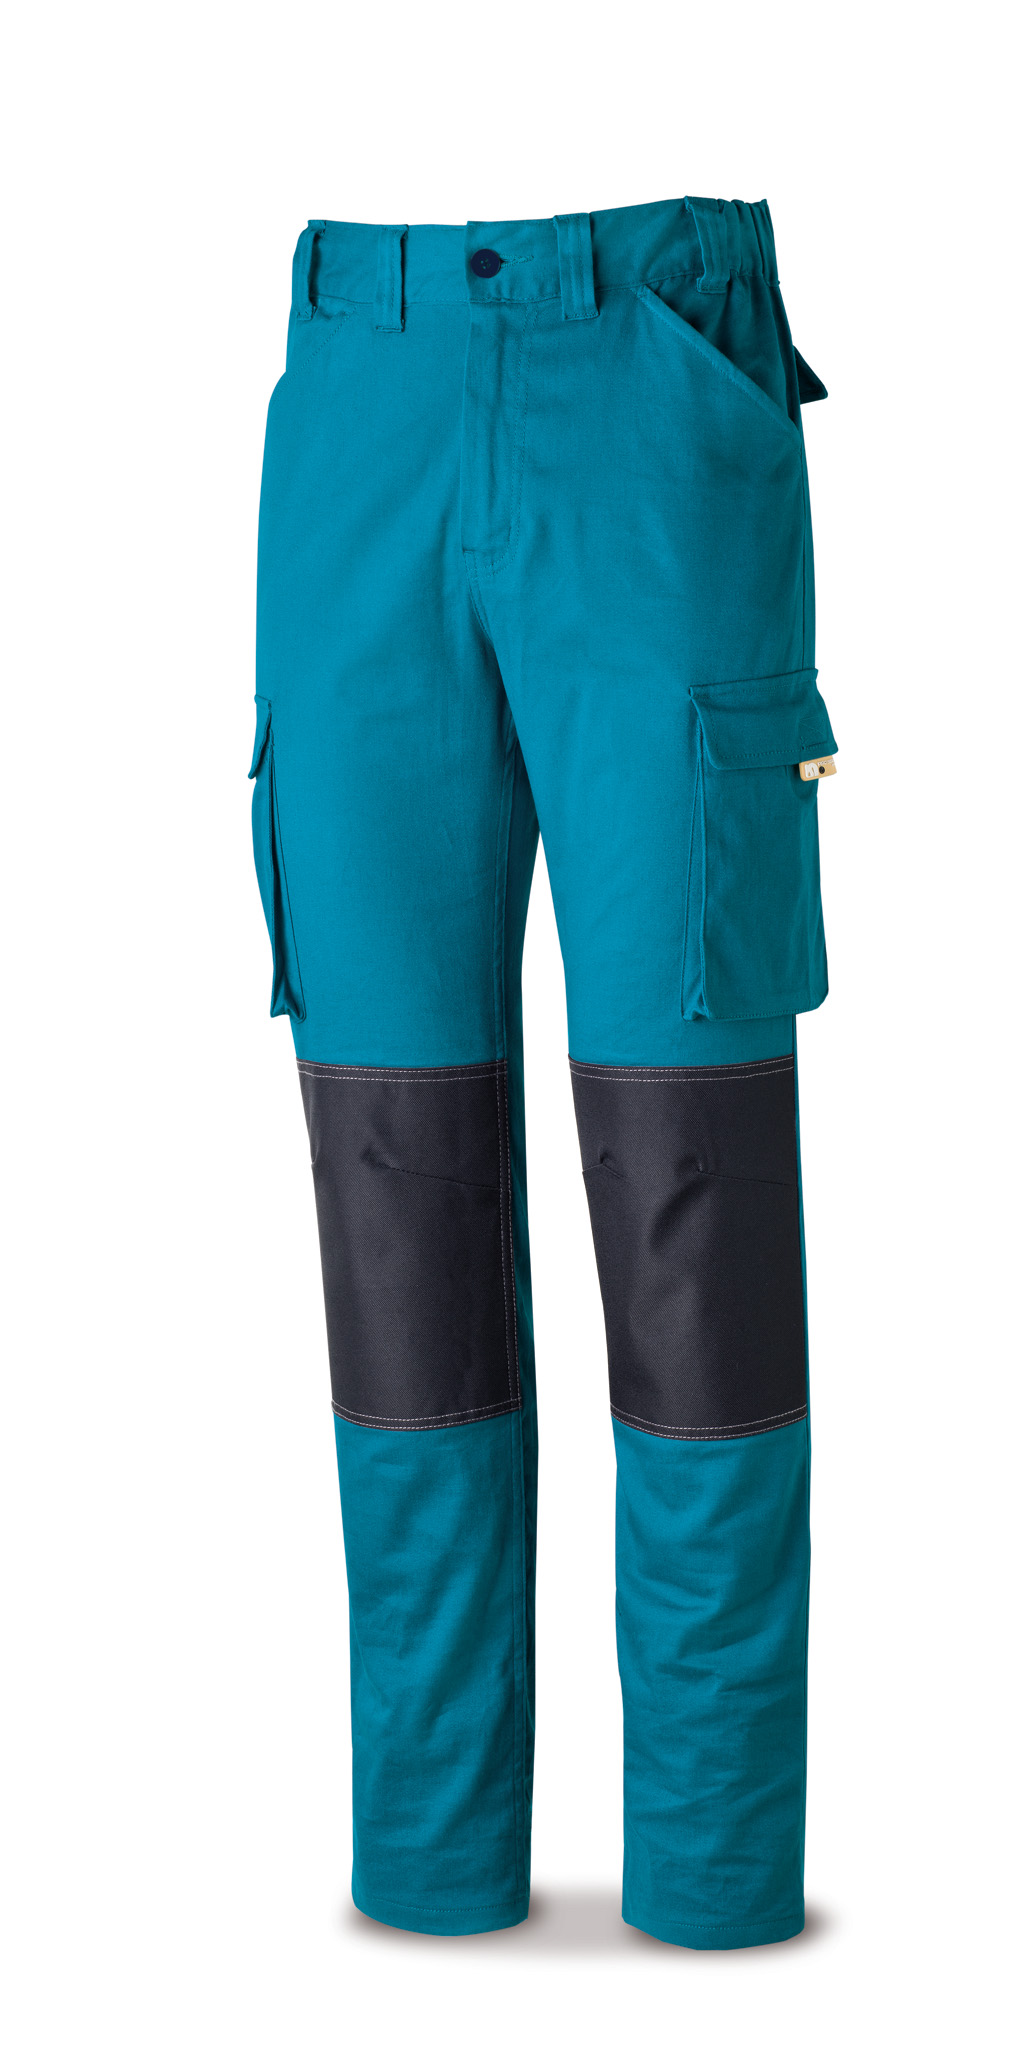 588-PSTRAE Vestuario Laboral Pro Series Calças ELÁSTICO, algodão e elastano.Cor Azul marinho.